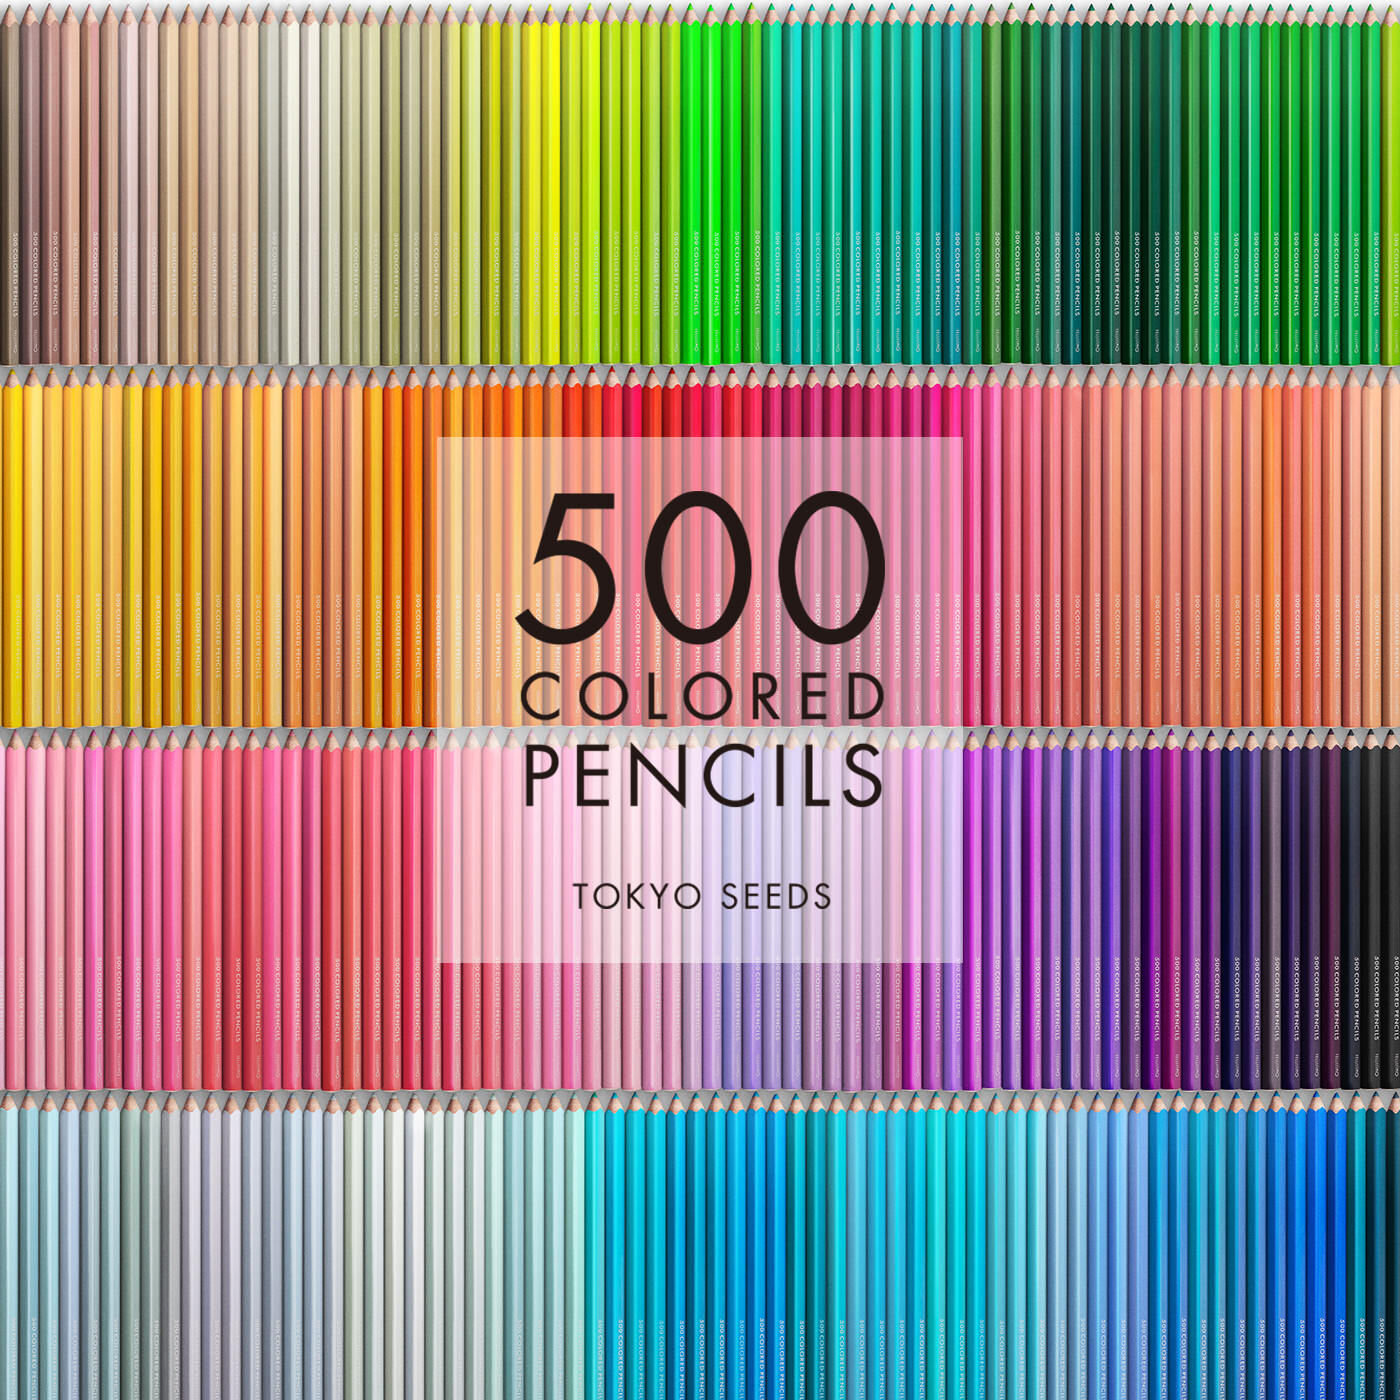 Real Stock|【330/500 PERPLEXED POLISH】500色の色えんぴつ TOKYO SEEDS|1992年、世界初の「500色」という膨大な色数の色えんぴつが誕生して以来、その販売数は発売当初から合わせると、世界55ヵ国10万セット以上。今回、メイド・イン・ジャパンにこだわり、すべてが新しく生まれ変わって登場しました。